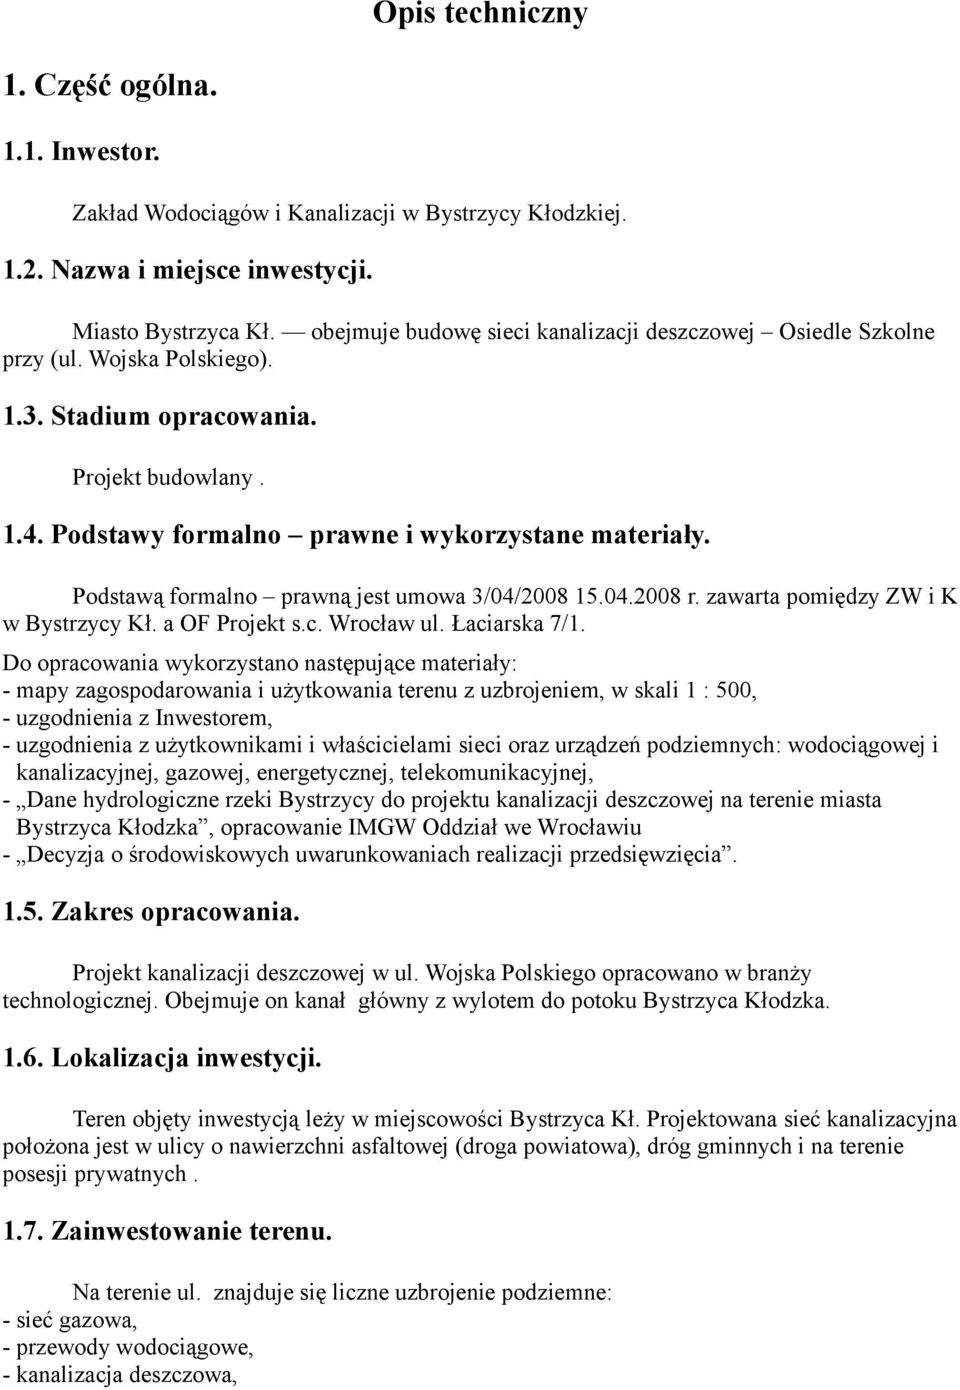 Podstawą formalno prawną jest umowa 3/04/2008 15.04.2008 r. zawarta pomiędzy ZW i K w Bystrzycy Kł. a OF Projekt s.c. Wrocław ul. Łaciarska 7/1.